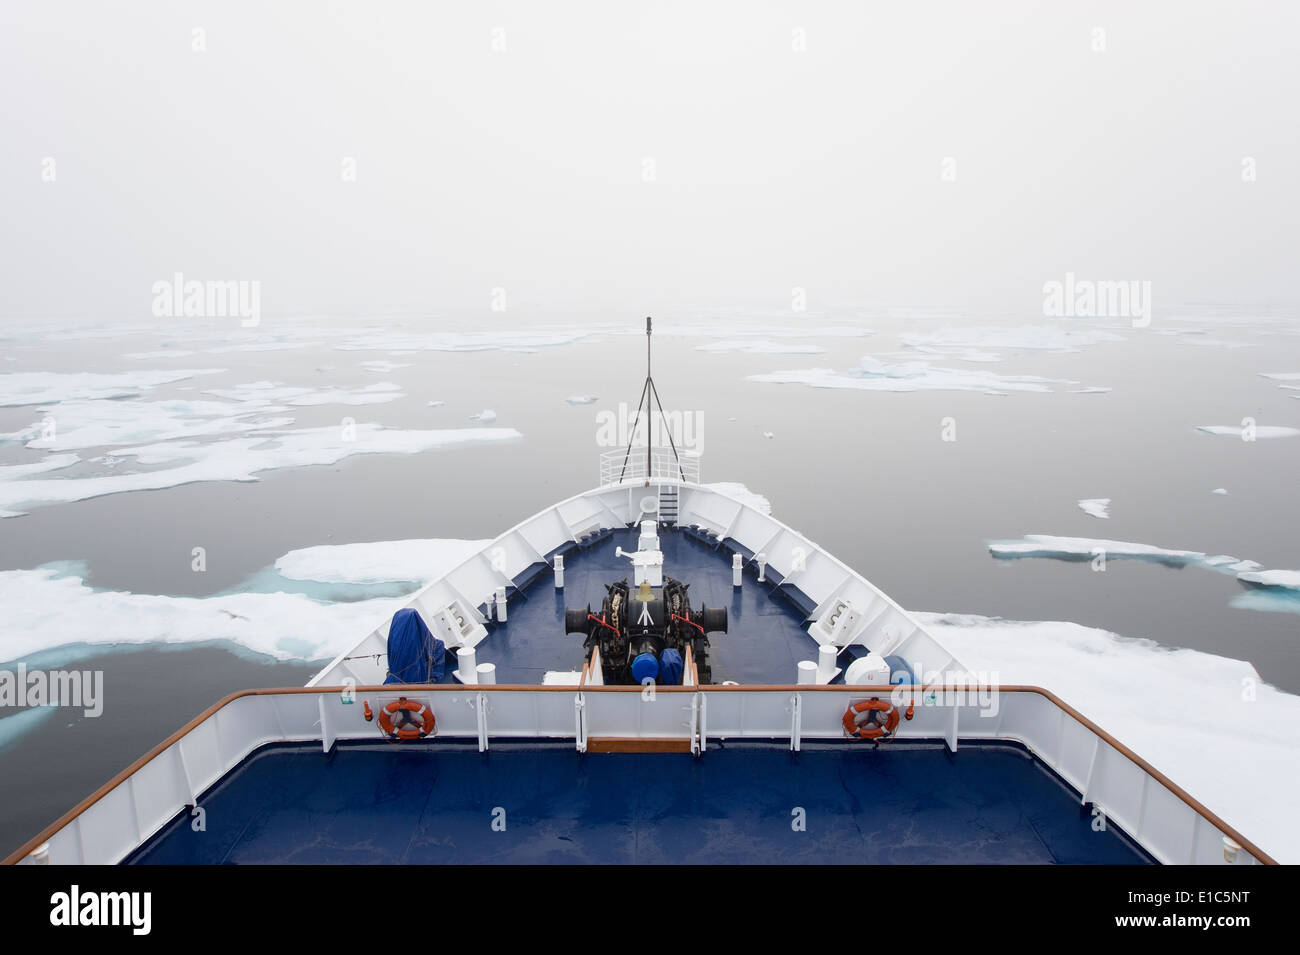 La vista sobre la cubierta de un barco crucero en la región del Ártico canadiense, que se mueve a través de témpanos de hielo. Foto de stock